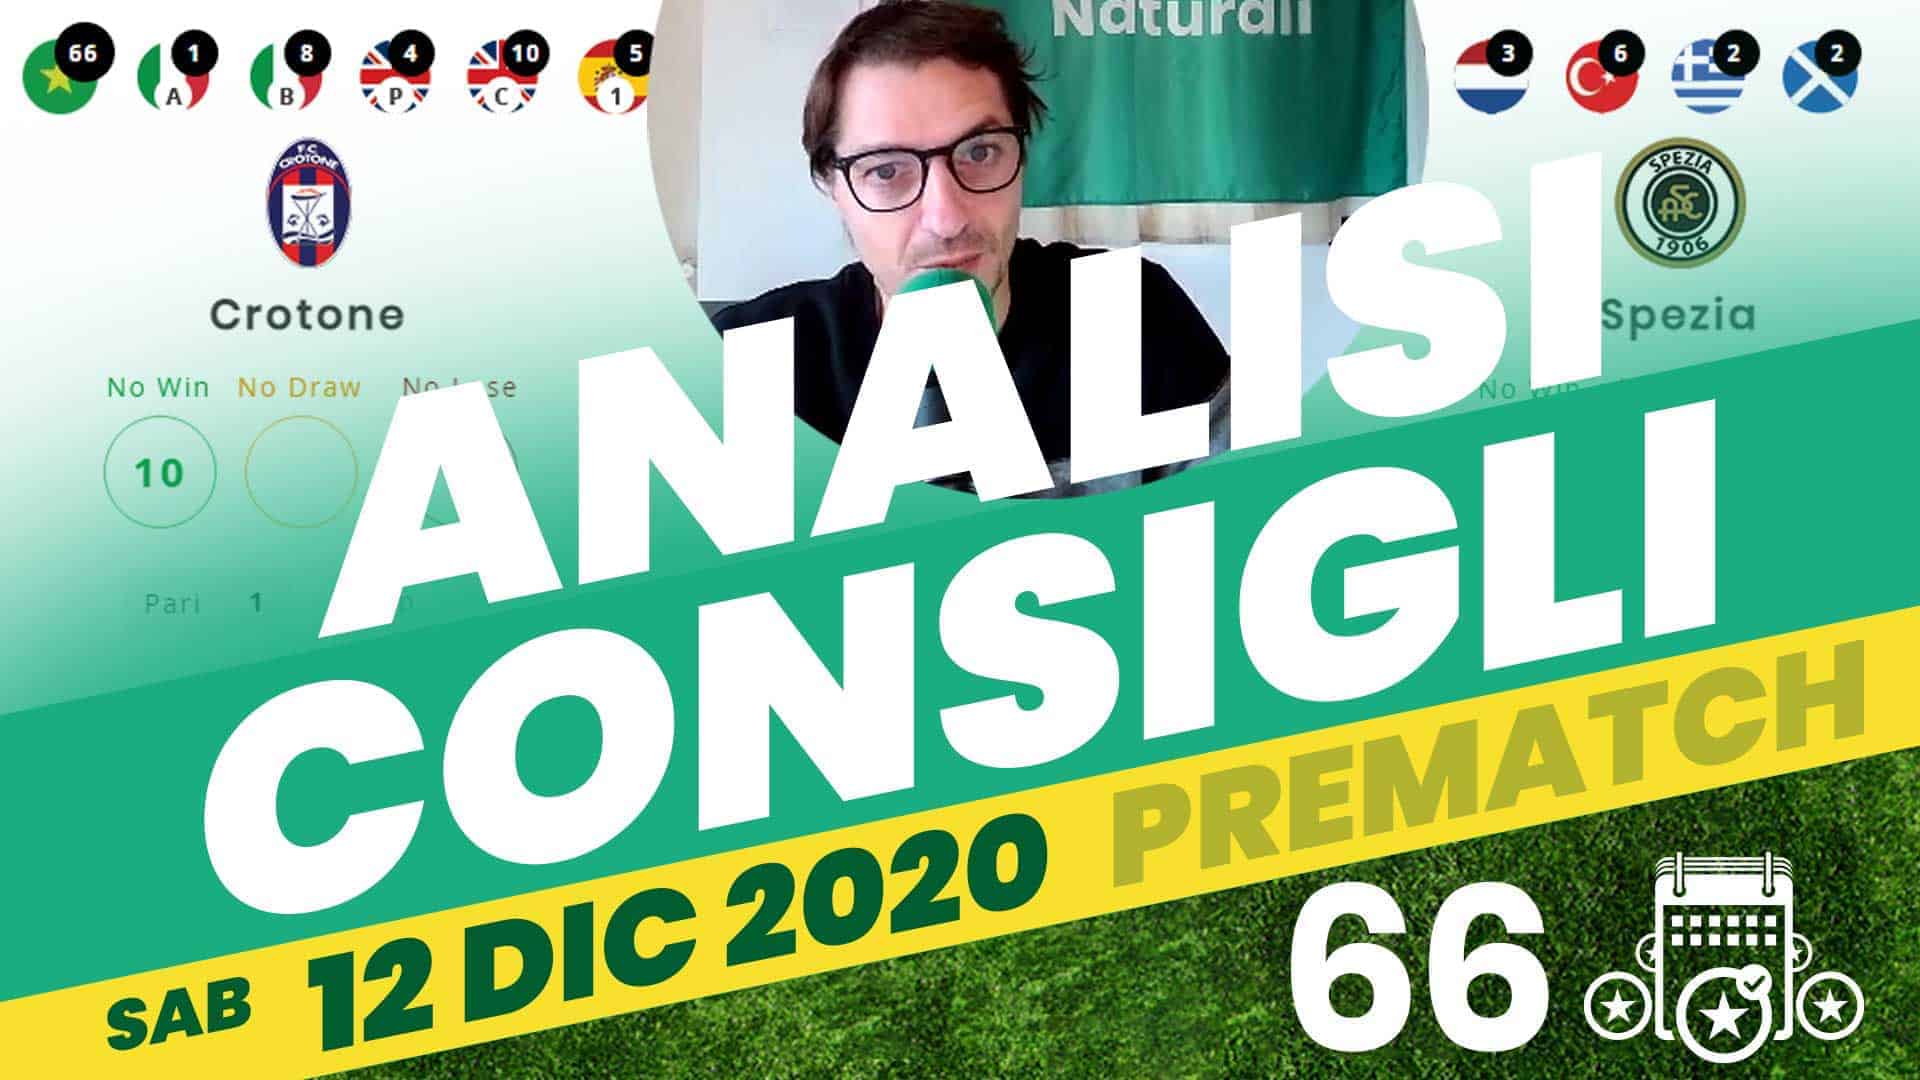 Pronostici Naturali Video Analisi Scommesse Betting Calcio Pre Partite Sabato 12 Dicembre 2020